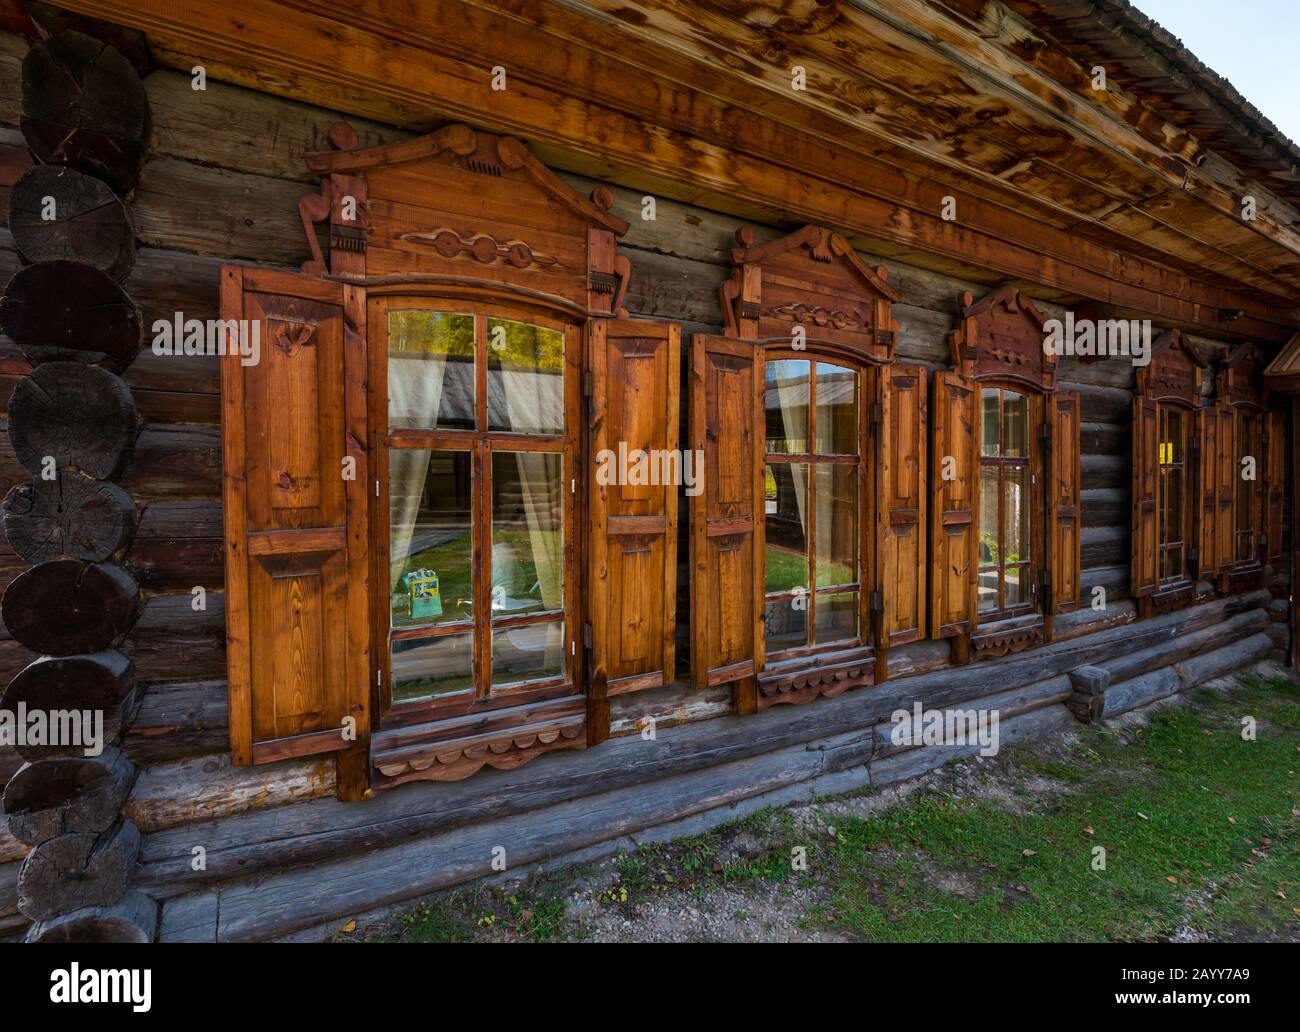 Altmodische Holzhütte im traditionellen Stil mit Fensterläden, Taltsy-Museum für Holzarchitektur, Region Irkutsk, Sibirien, Russland Stockfoto